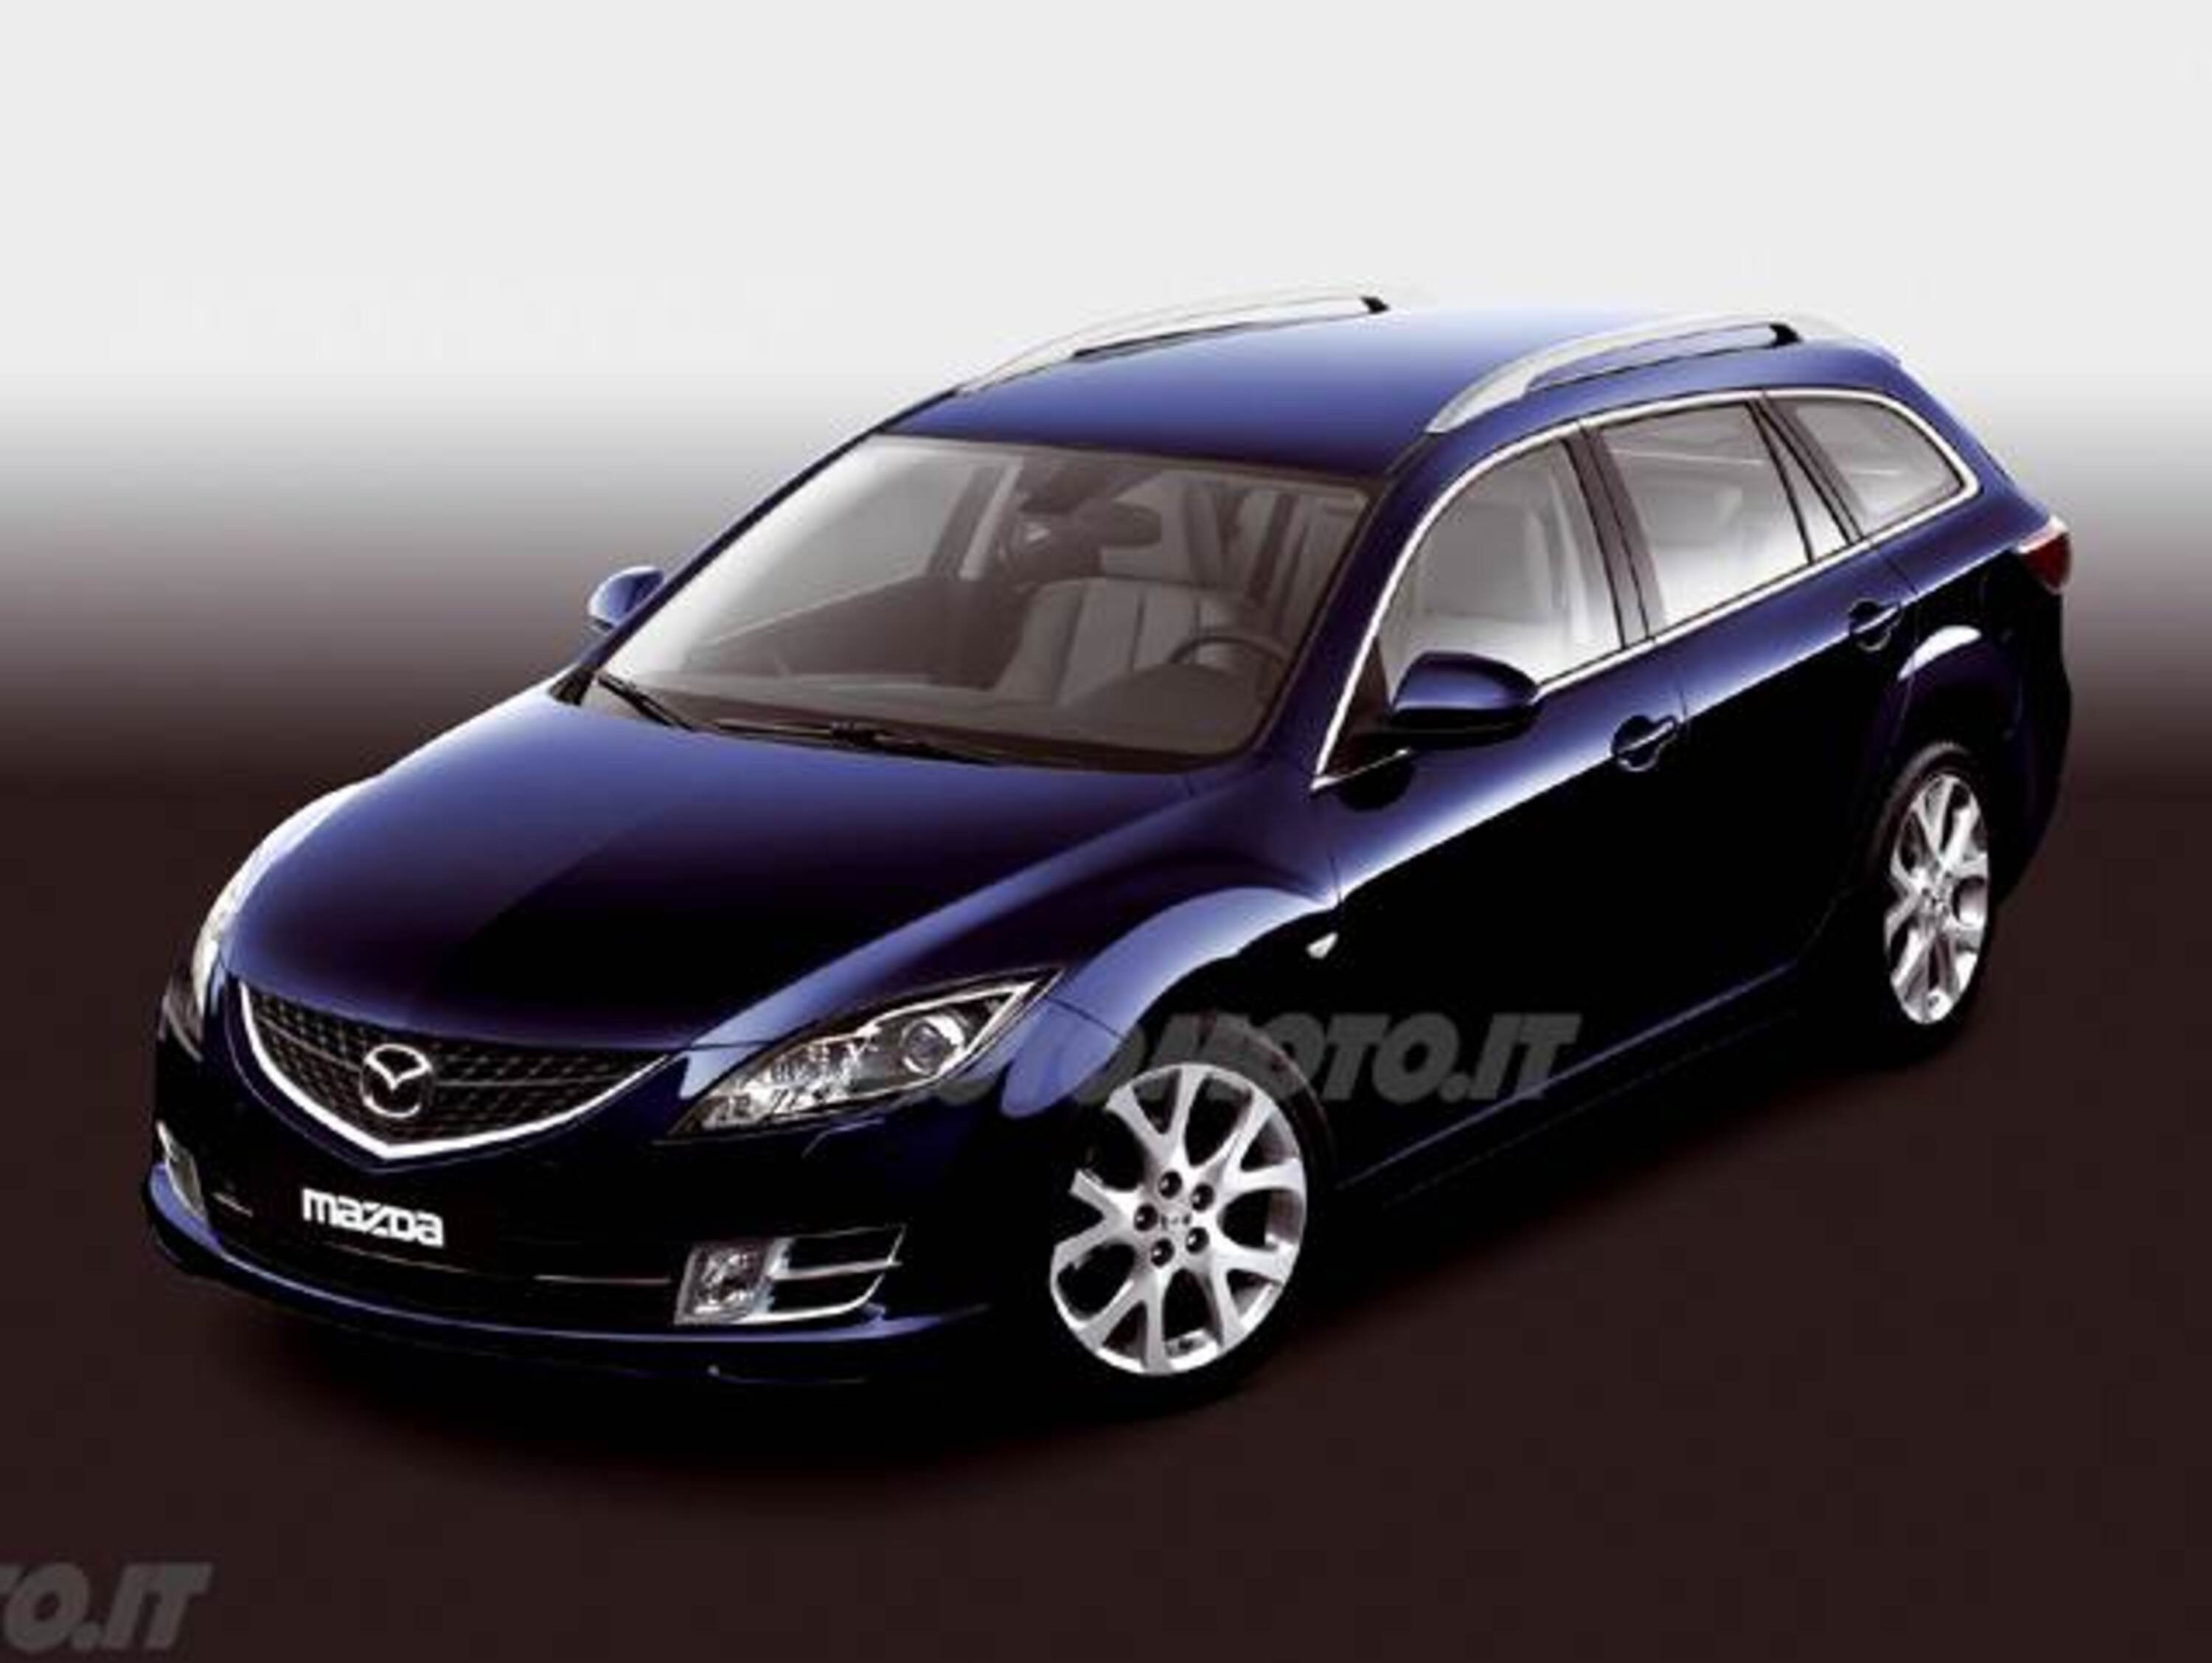 Mazda Mazda6 Station Wagon 2.5 16V 170CV Wagon Luxury